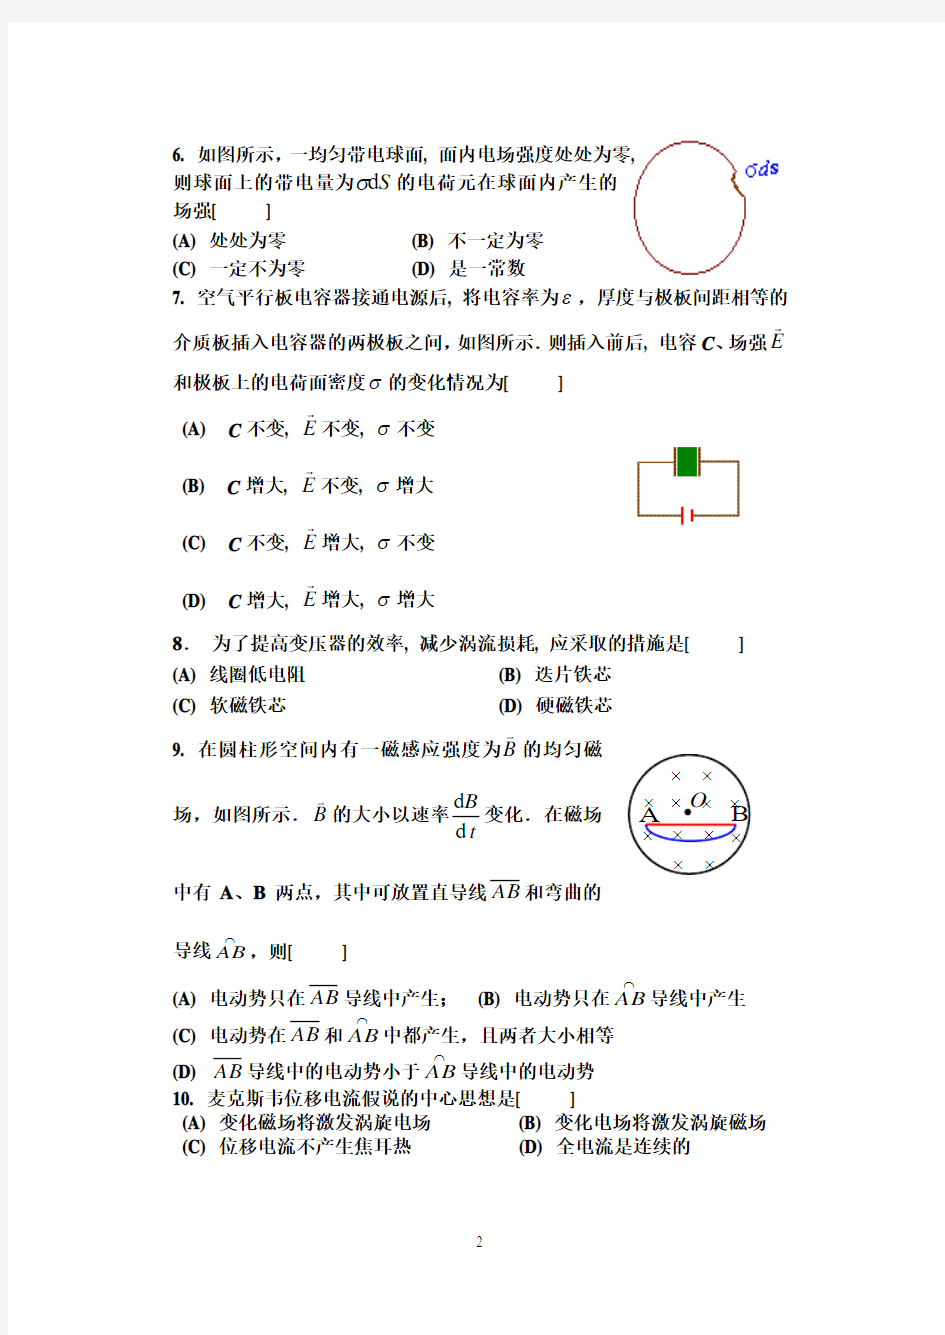 郑州轻工业学院2010-2011年大学物理A期末考试试卷分析